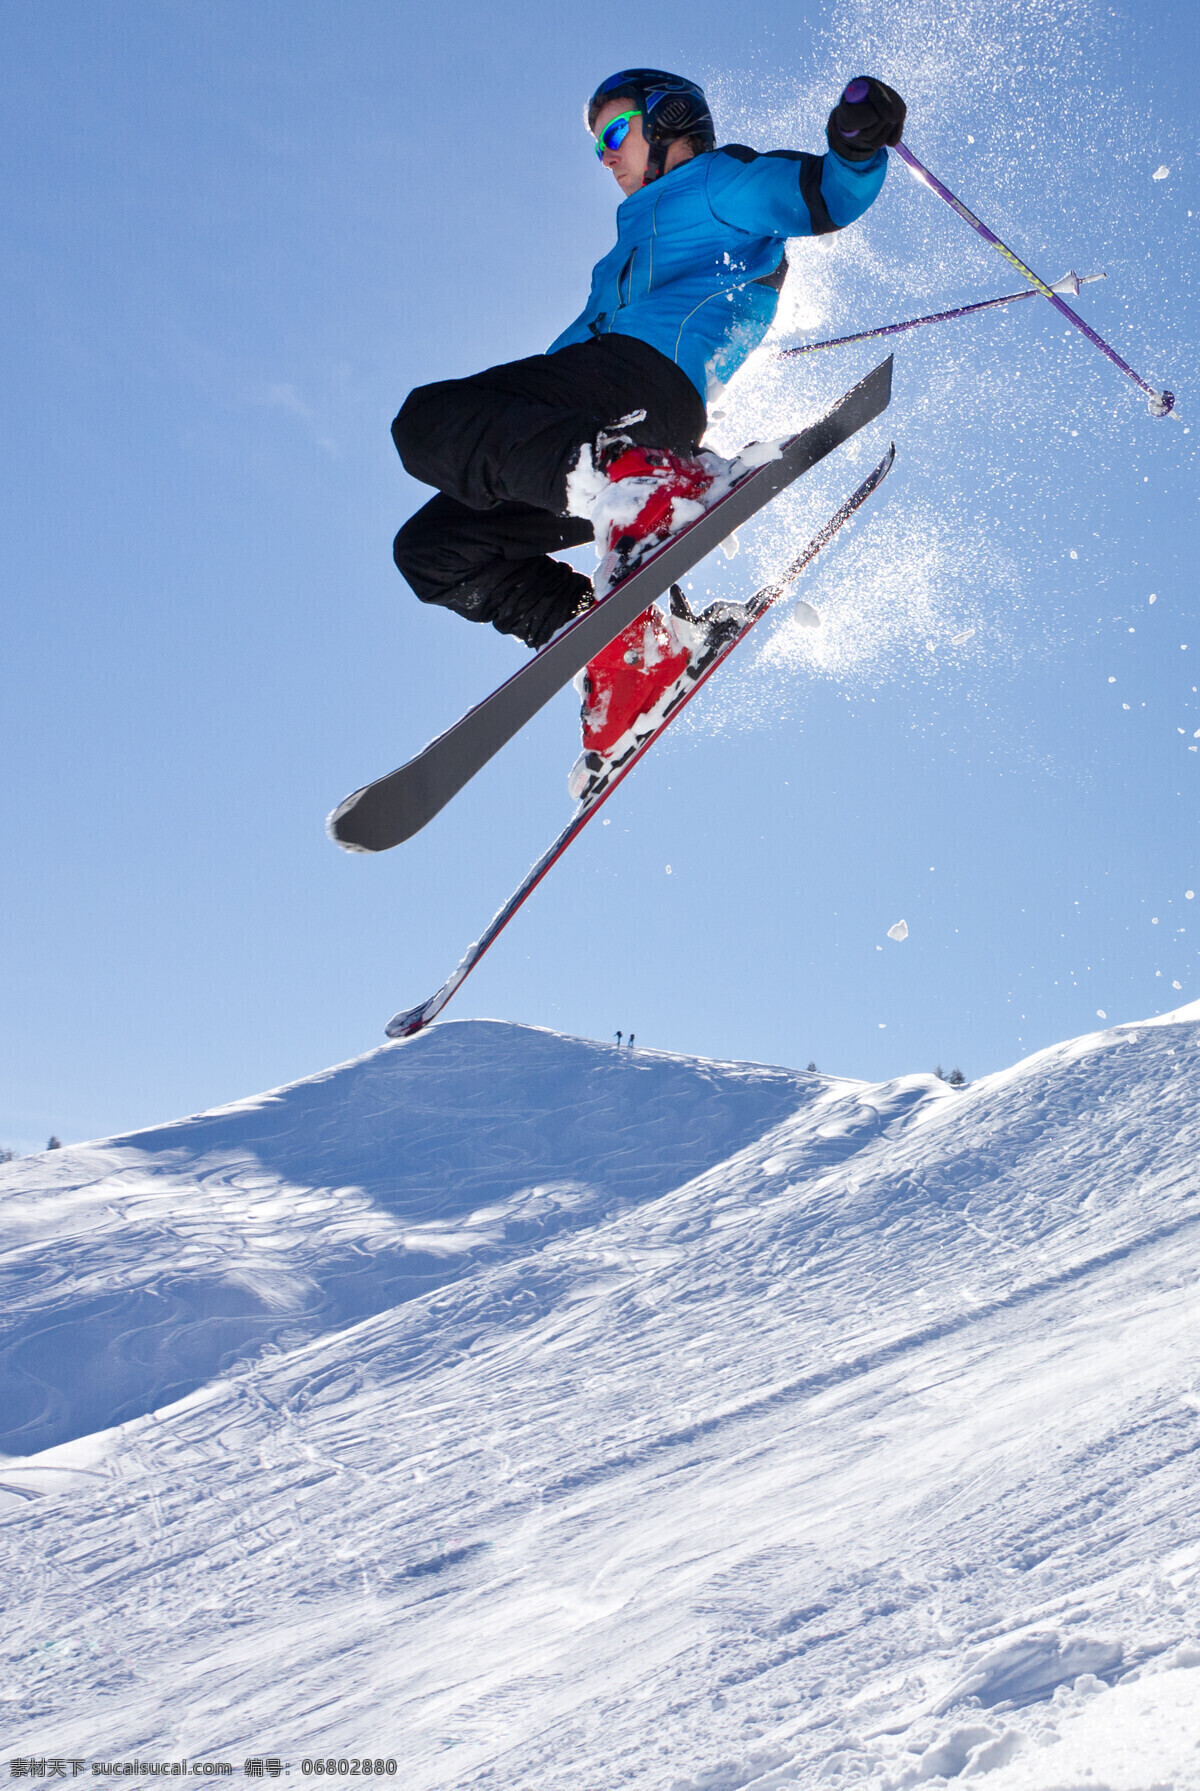 腾空 跳跃 滑雪 运动员 雪地运动 划雪运动 极限运动 体育项目 飞跃 滑雪图片 生活百科